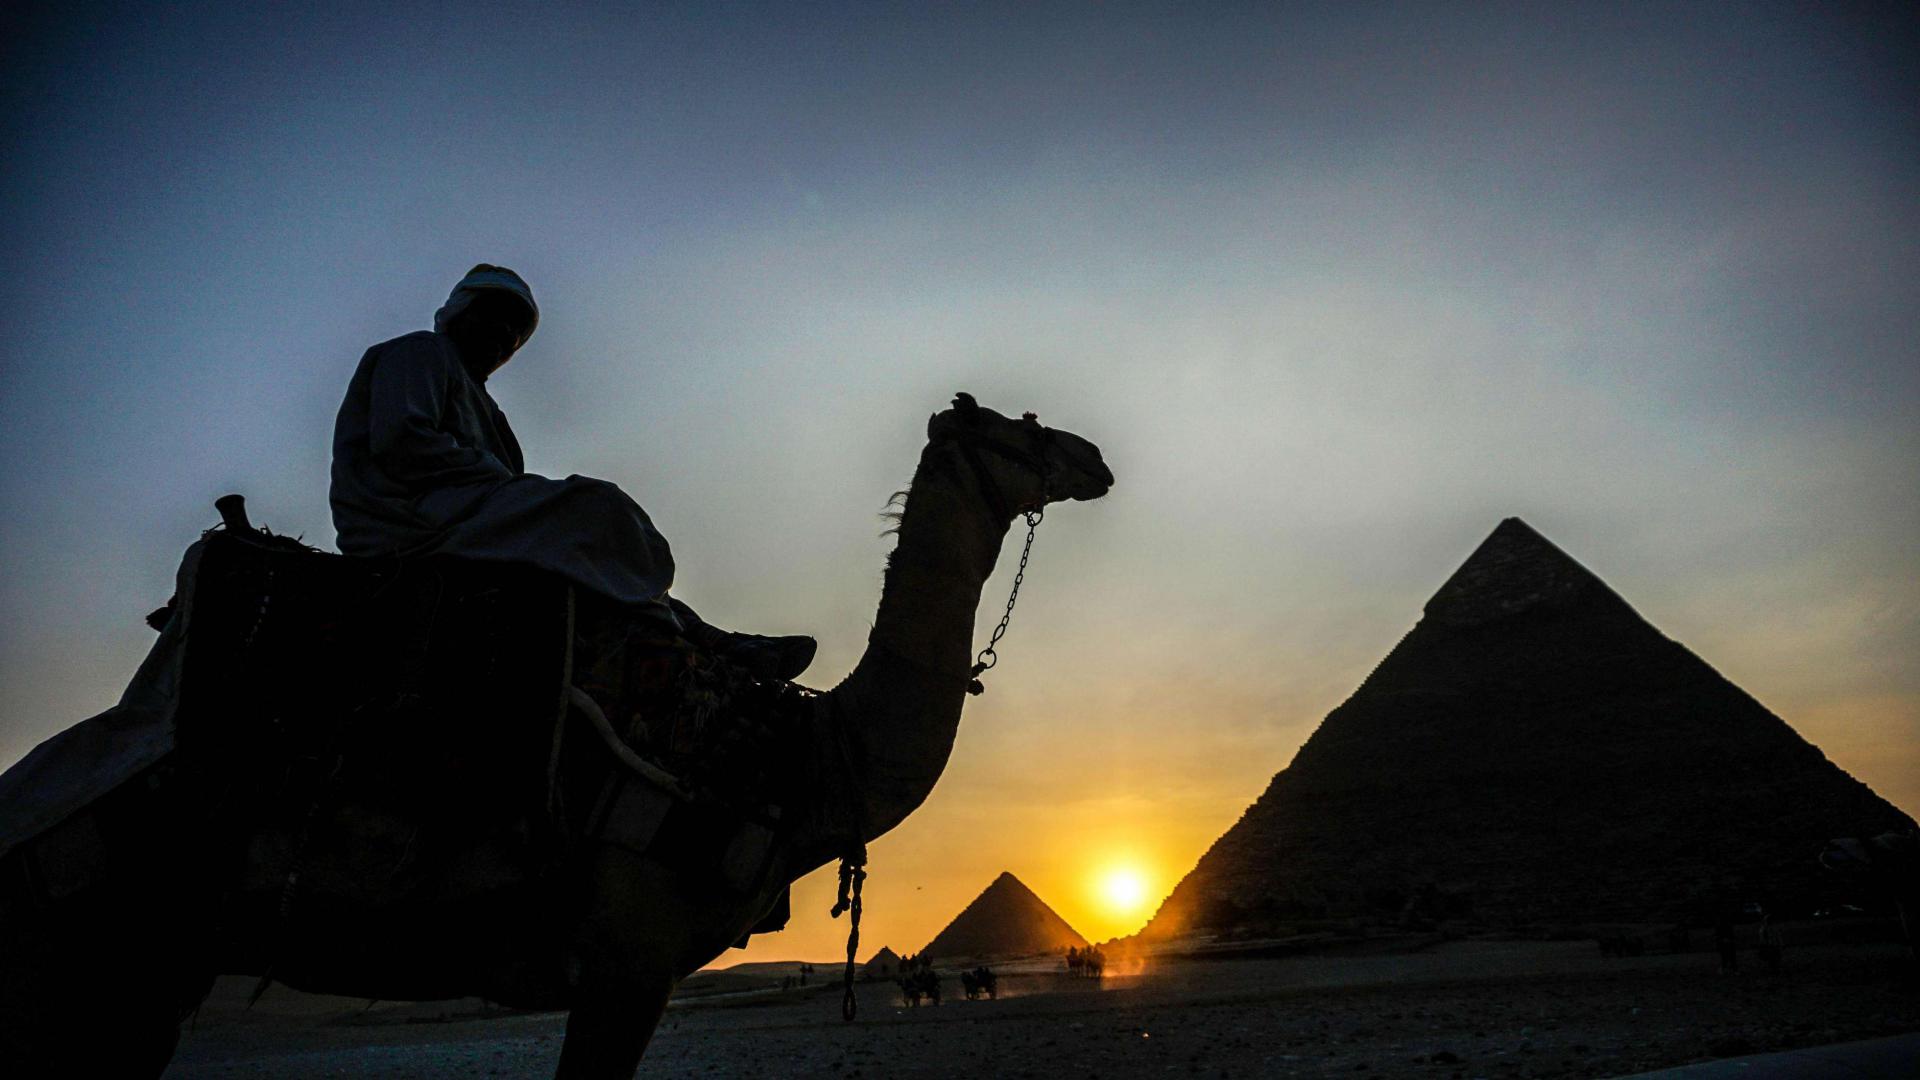 رجل يركب جملا بالقرب من الاهرامات في مصر